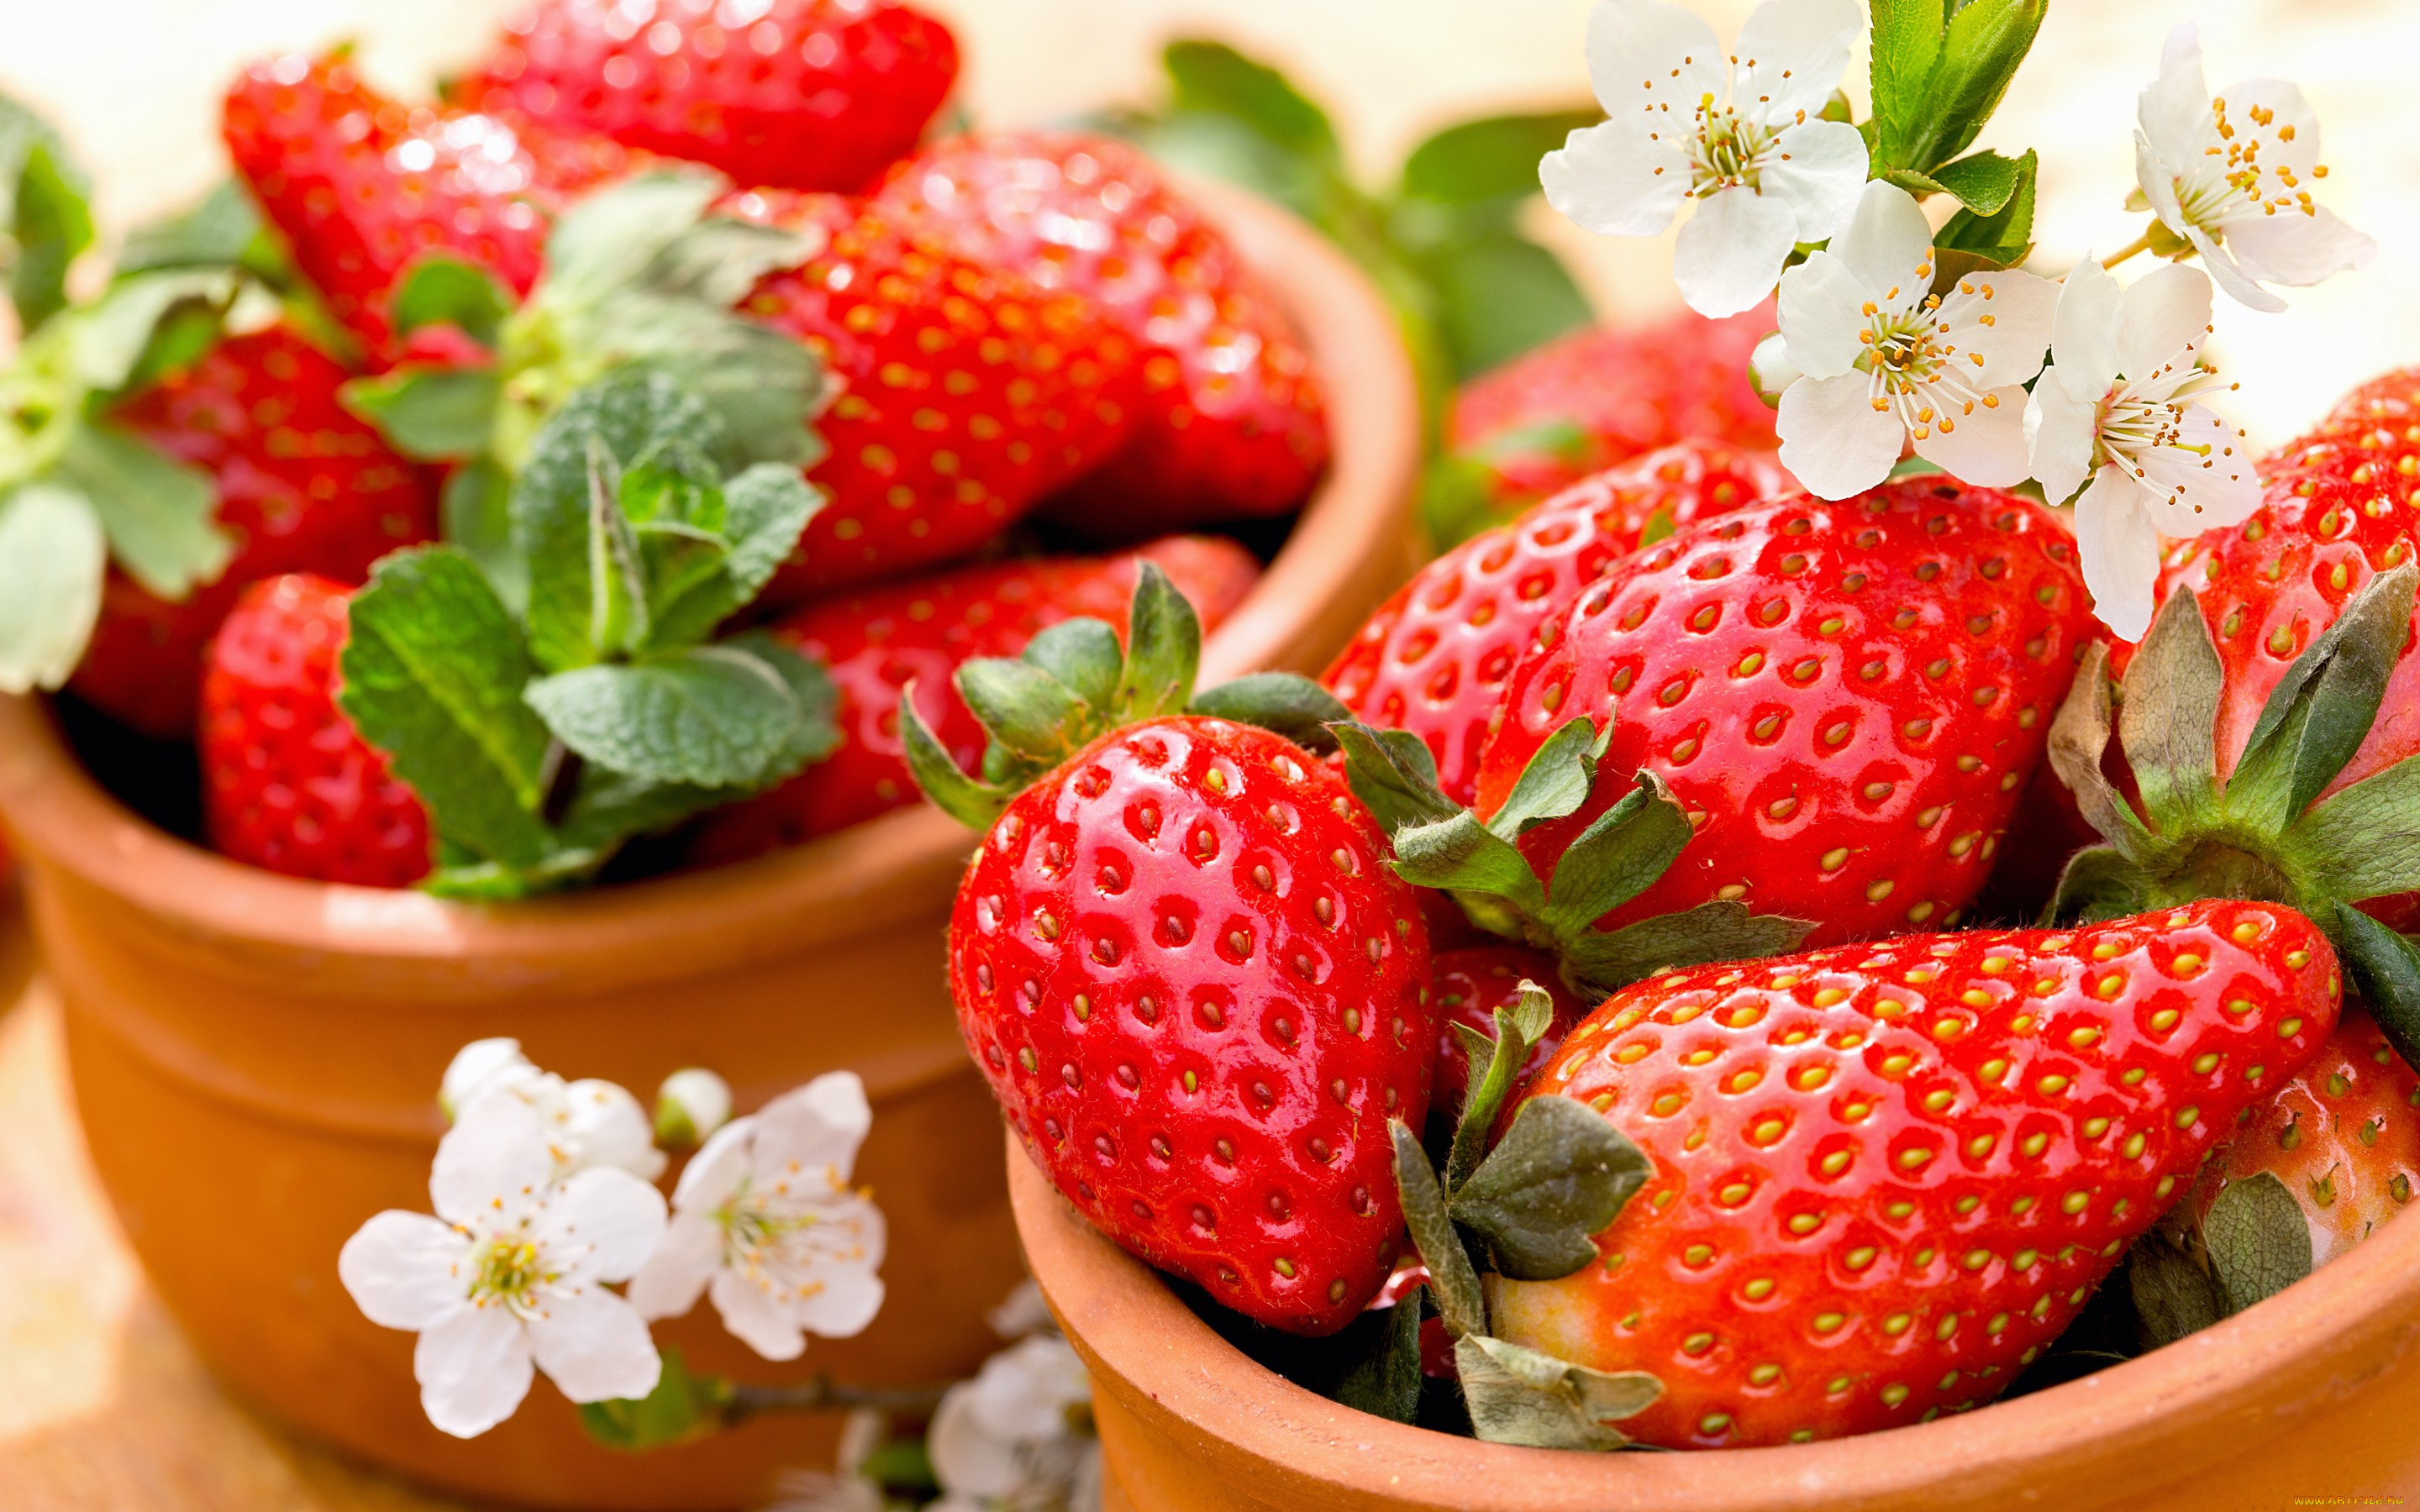 еда, клубника, , земляника, красные, ягоды, спелая, fresh, berries, strawberry, весна